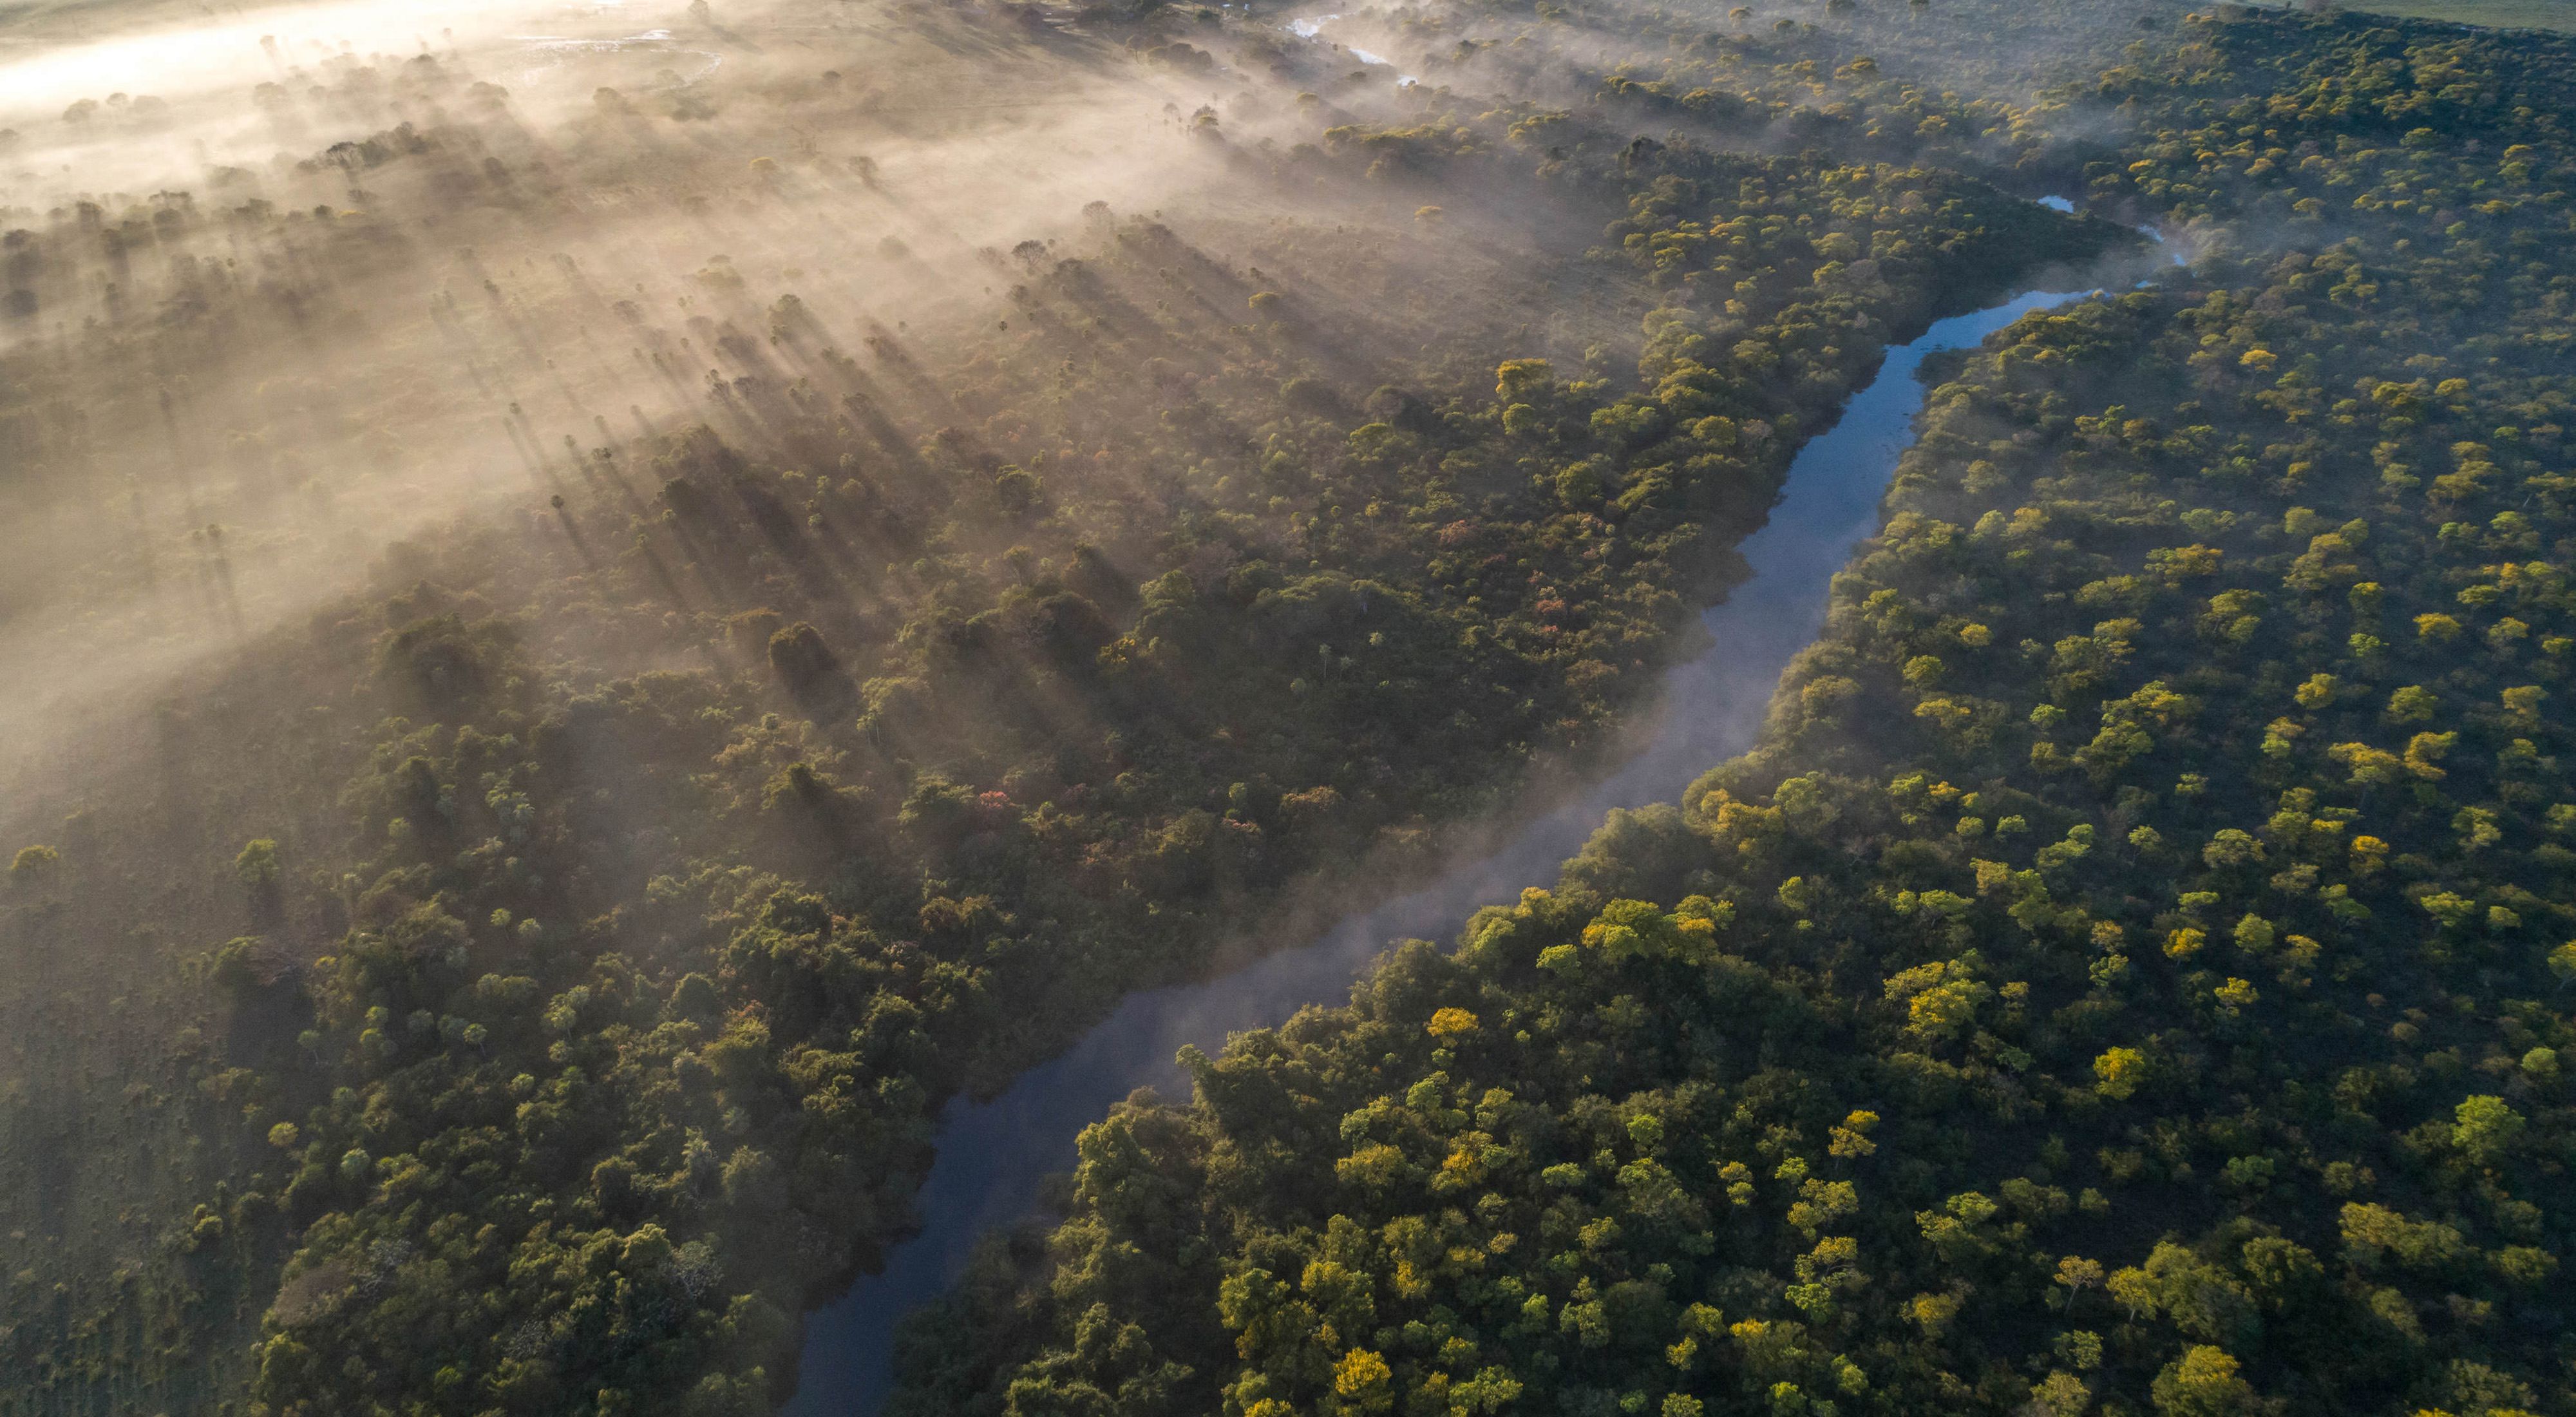 Margem de rio preservada no Pantanal.